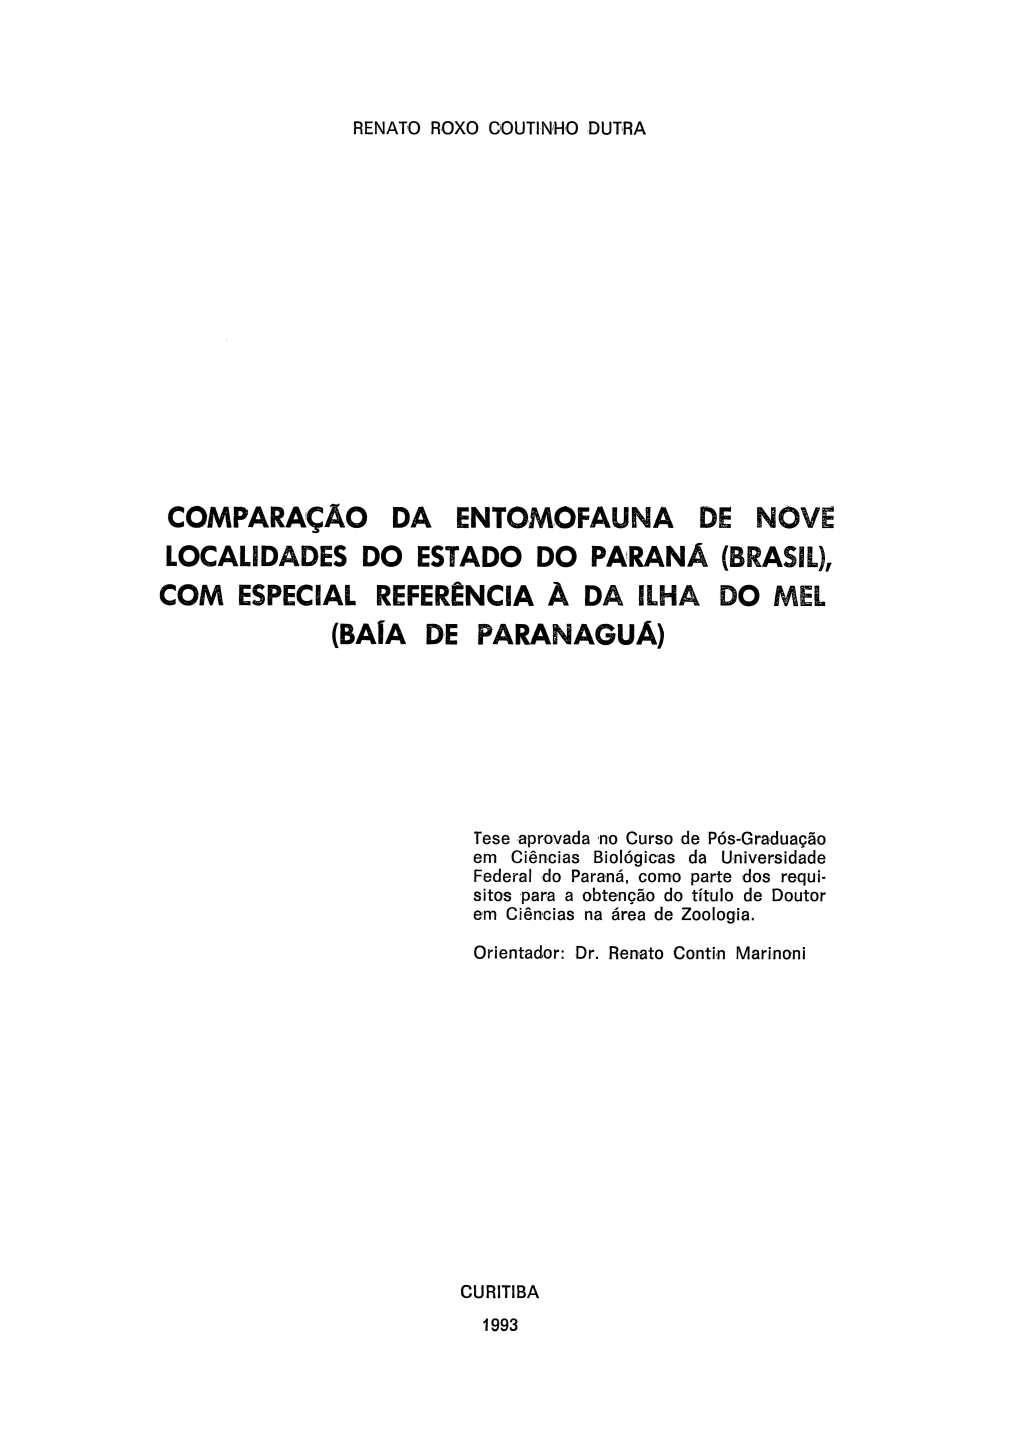 COMPARAÇÃO DA ENTOMOFAUNA DE NOVE LOCALIDADES DO ESTADO DO PARANÁ (BRASIL), COM ESPECIAL REFERÊNCIA a DA ILHA DO MEL (Bafa DE PARANAGUÁ)